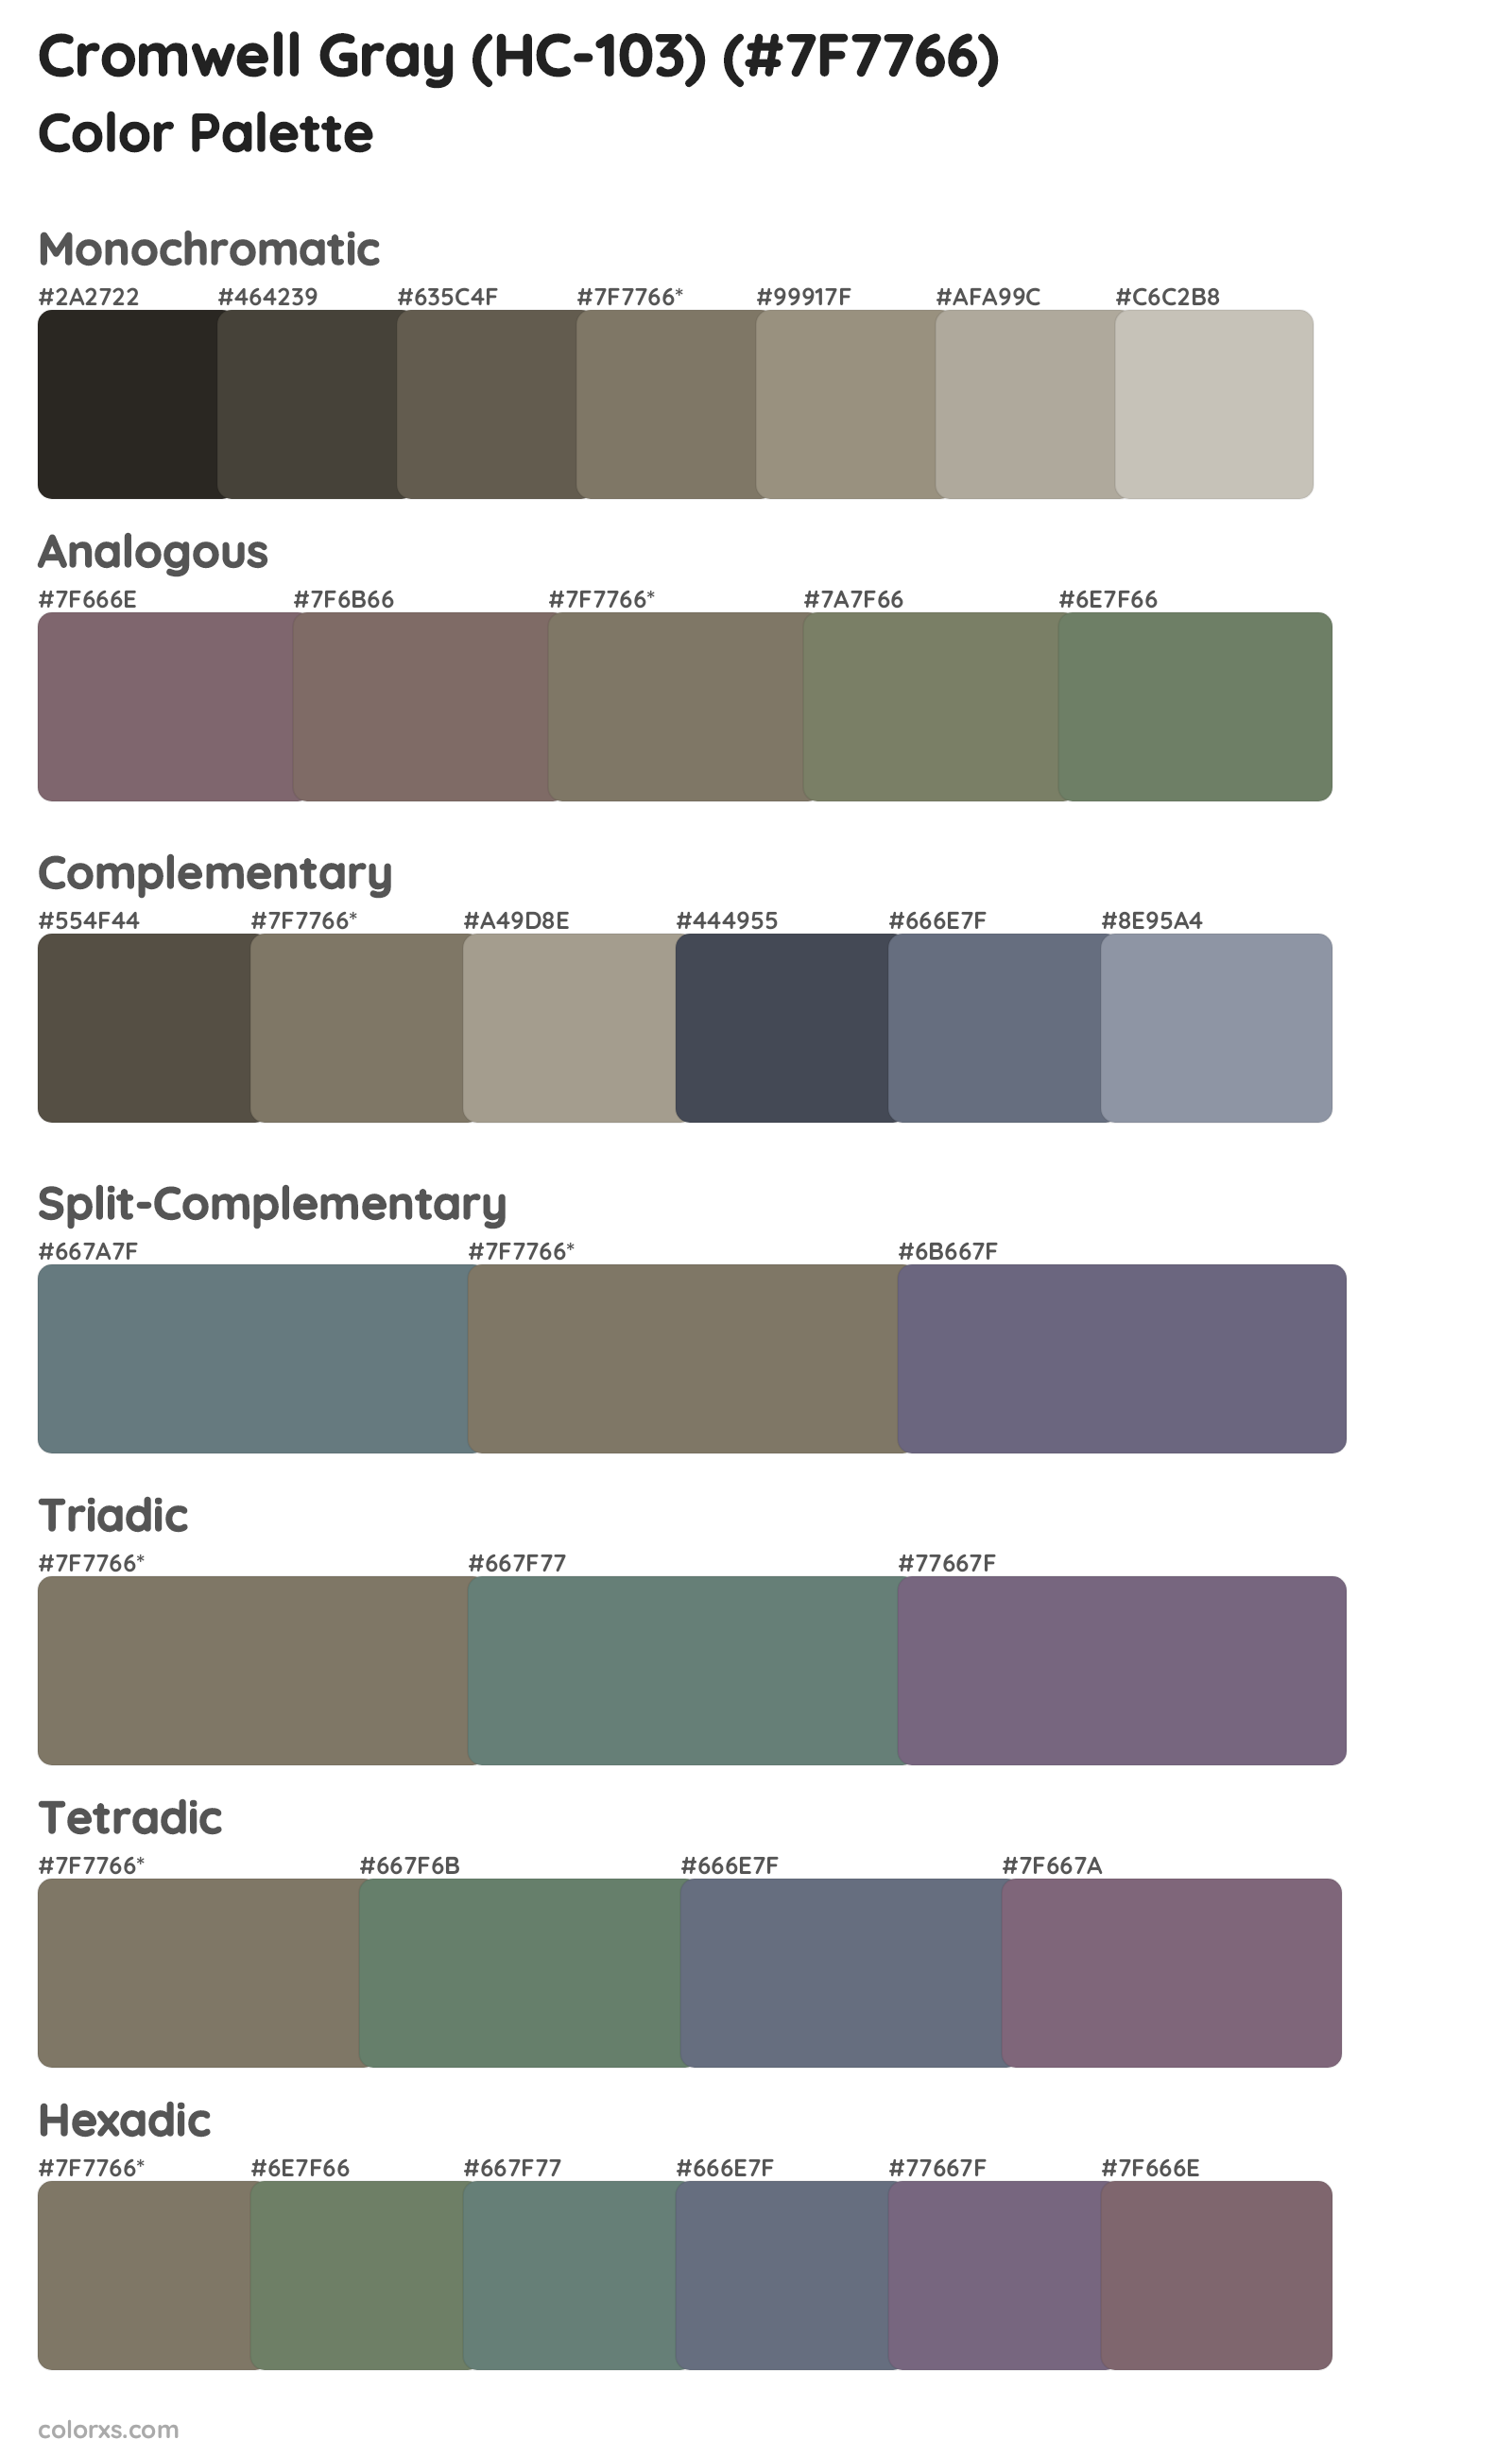 Cromwell Gray (HC-103) Color Scheme Palettes